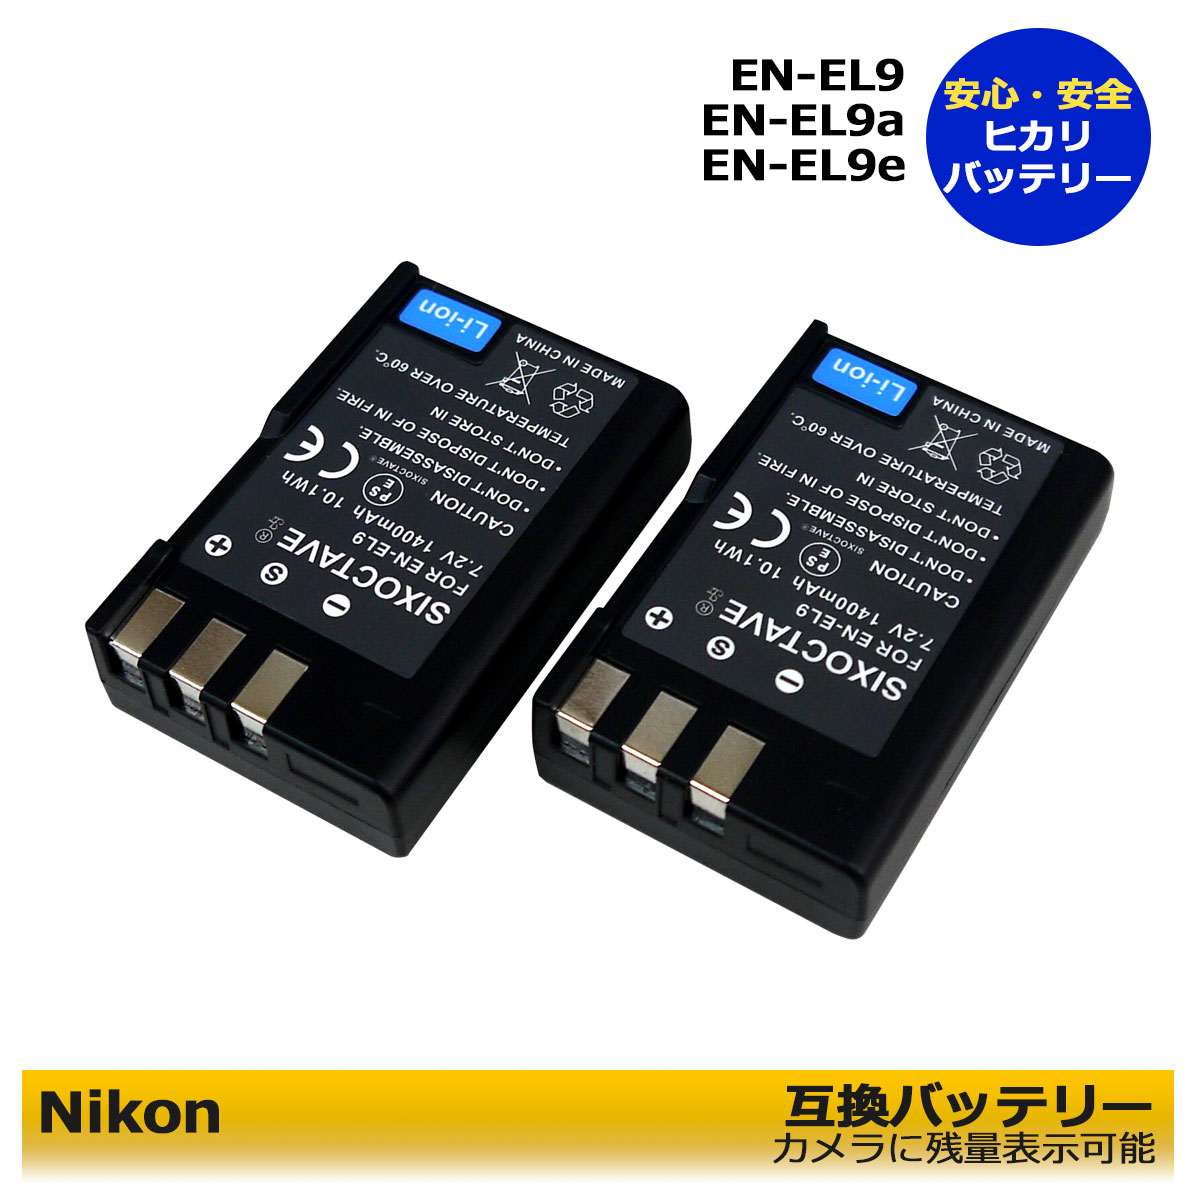 ニコン EN-EL9 / EN-EL9a【あす楽対応】 互換バッテリー 2個セット Nikon （グレードAセル使用） D5000 D3000 D60 D40シリーズ用D-Series クイックチャージャー MH-23